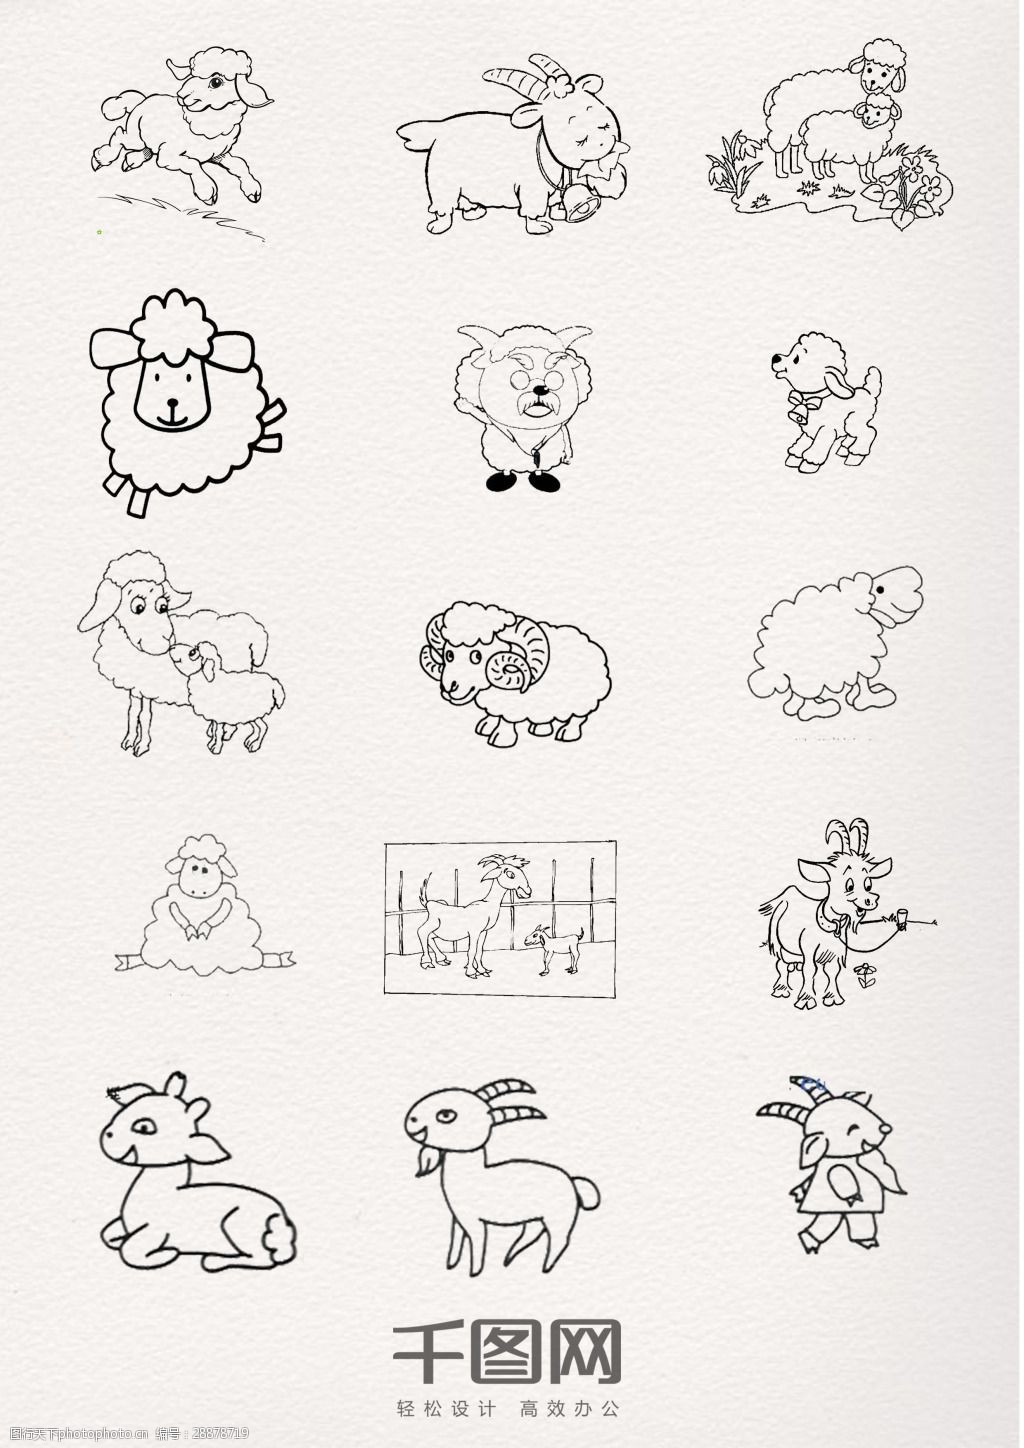 关键词:黑色线条绵羊动物简笔画 动物 卡通 铅笔 钢笔 黑白 线条 简约